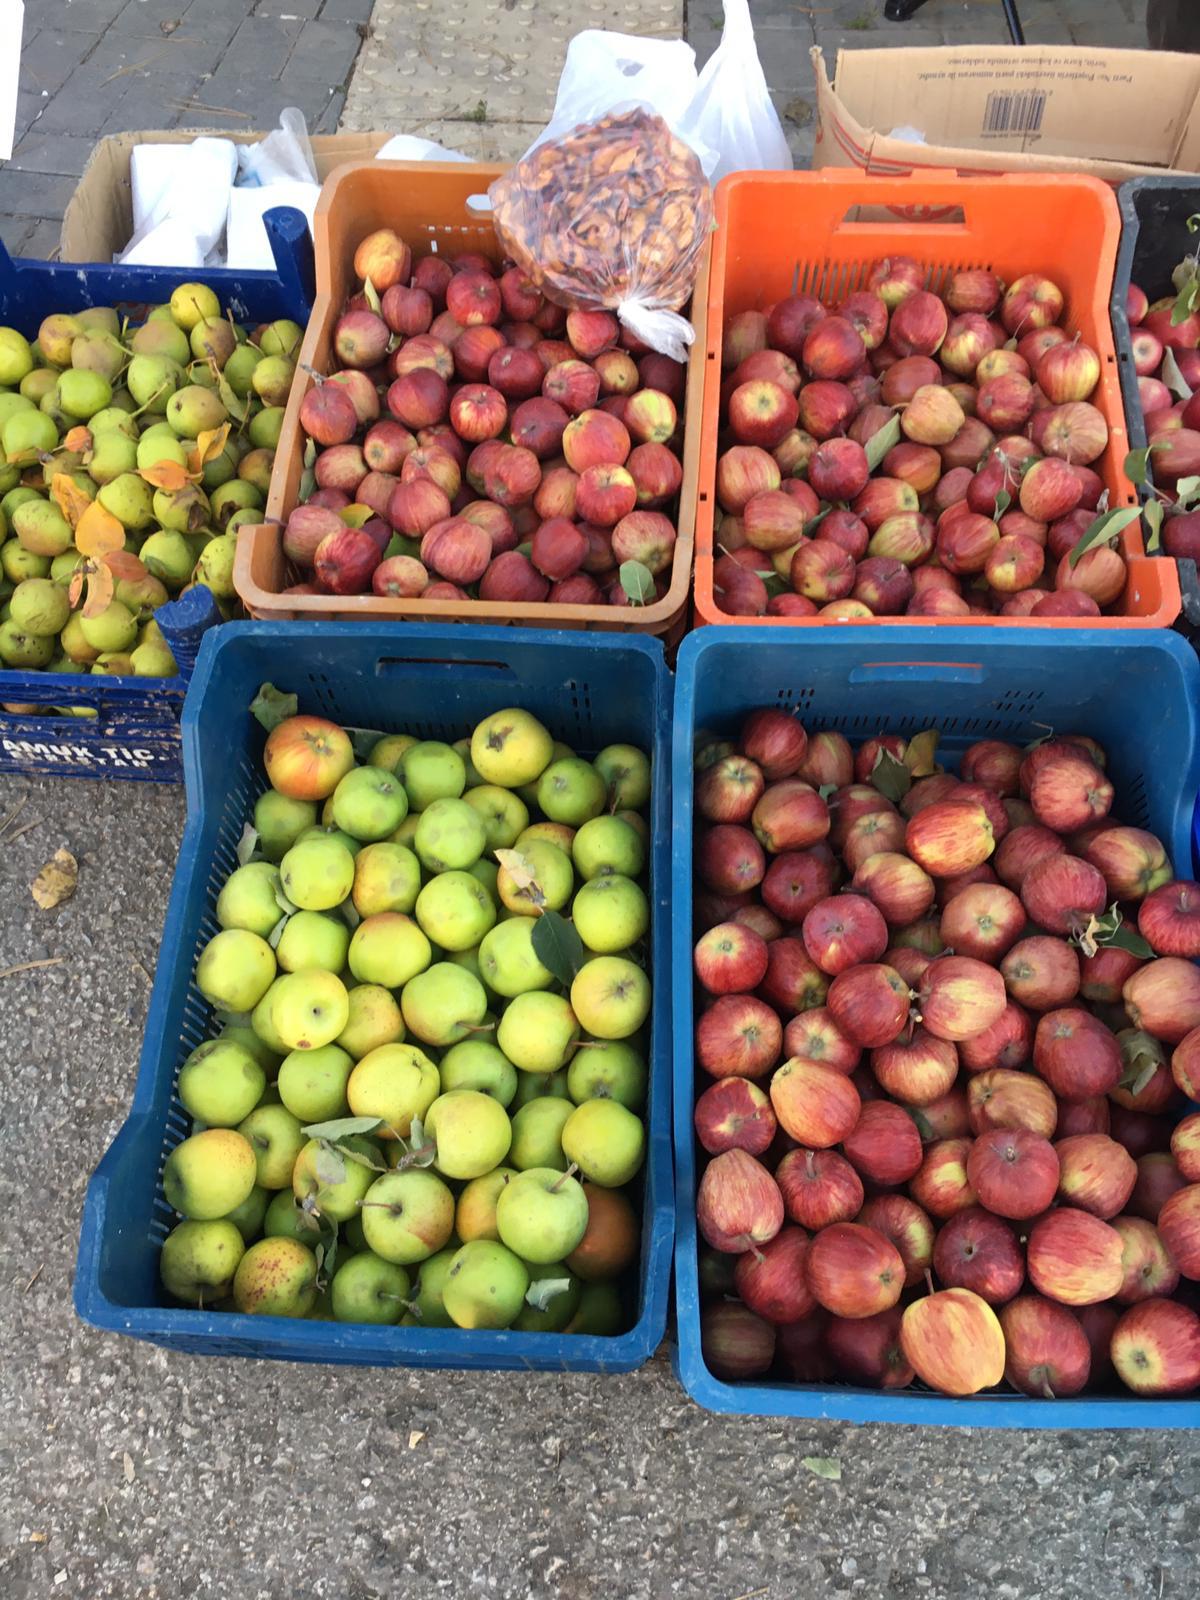 Elma - erdoğan usta tarafından verilen satılık amasya çeşidi elma  ilanını ve diğer satılık elma ilanlarını tarimziraat.com adresinde bulabilirsiniz